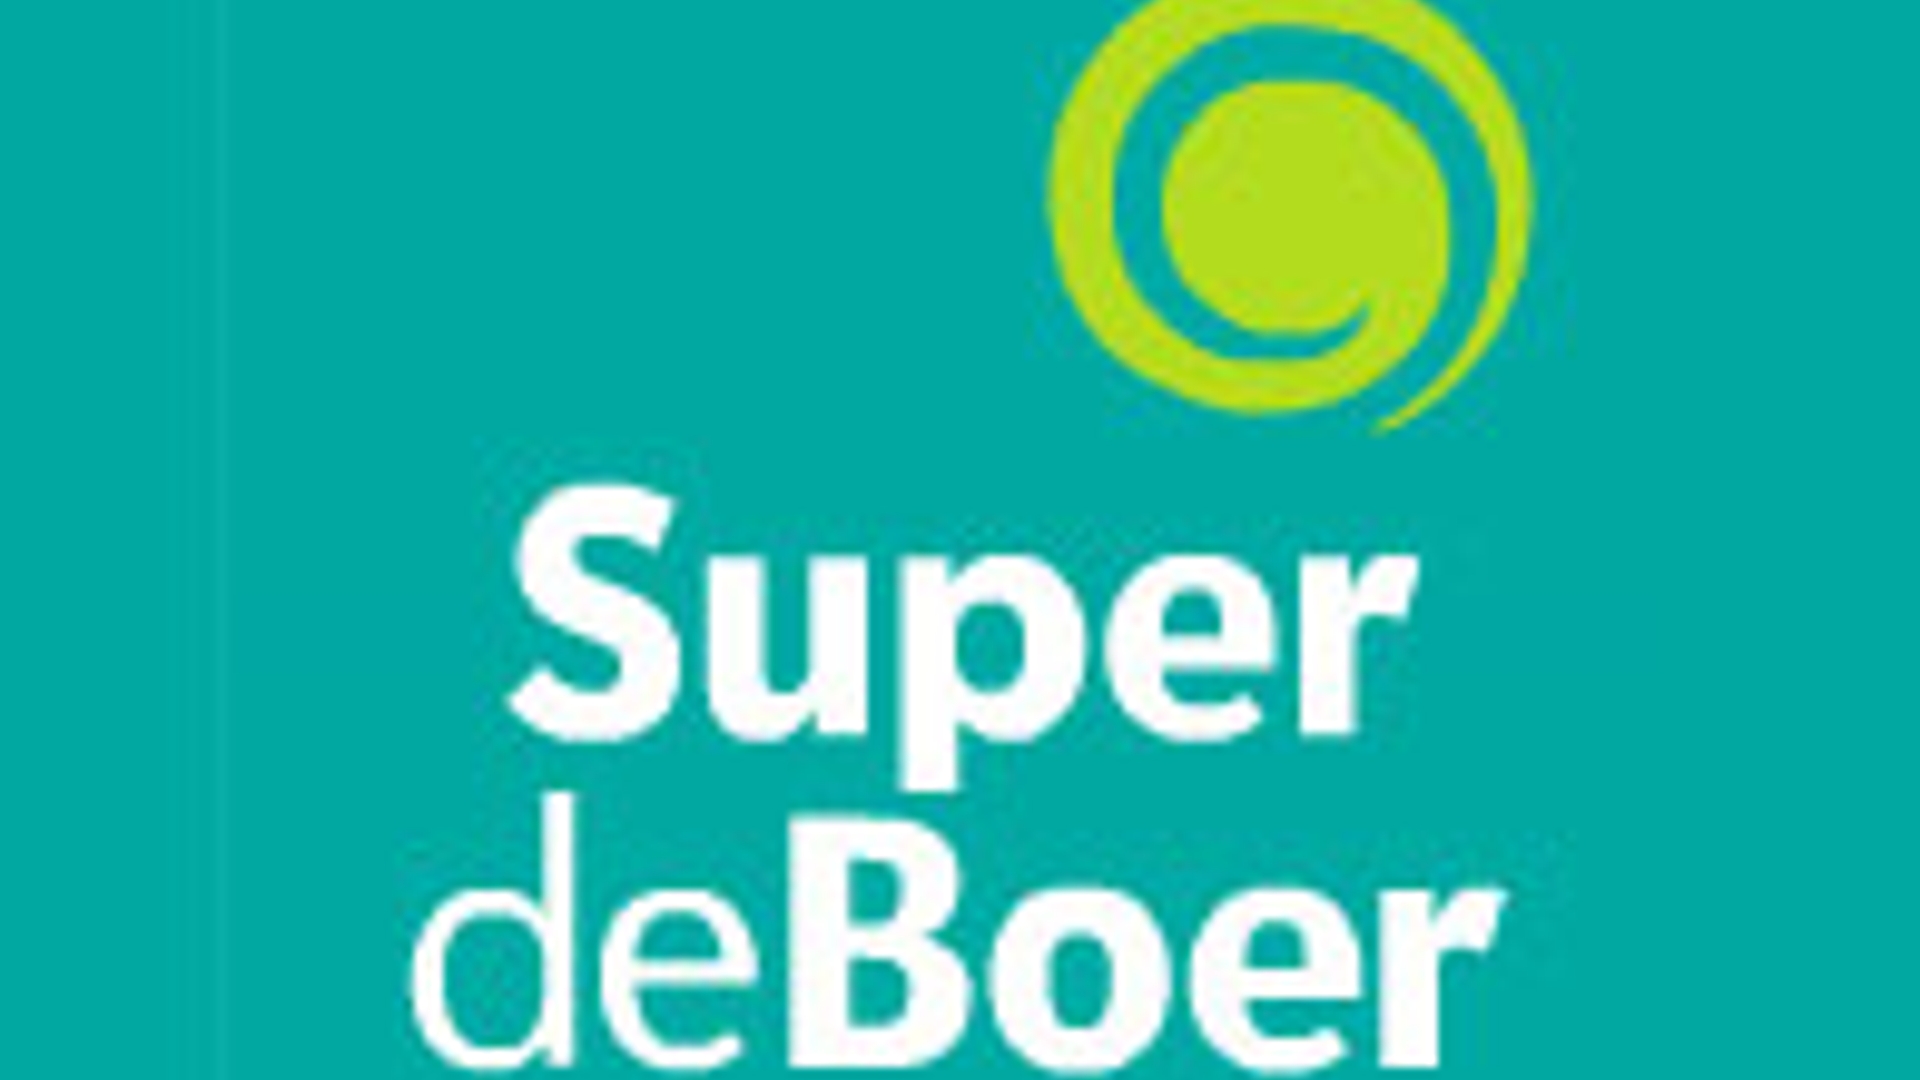 Super_de_Boer_02.jpeg